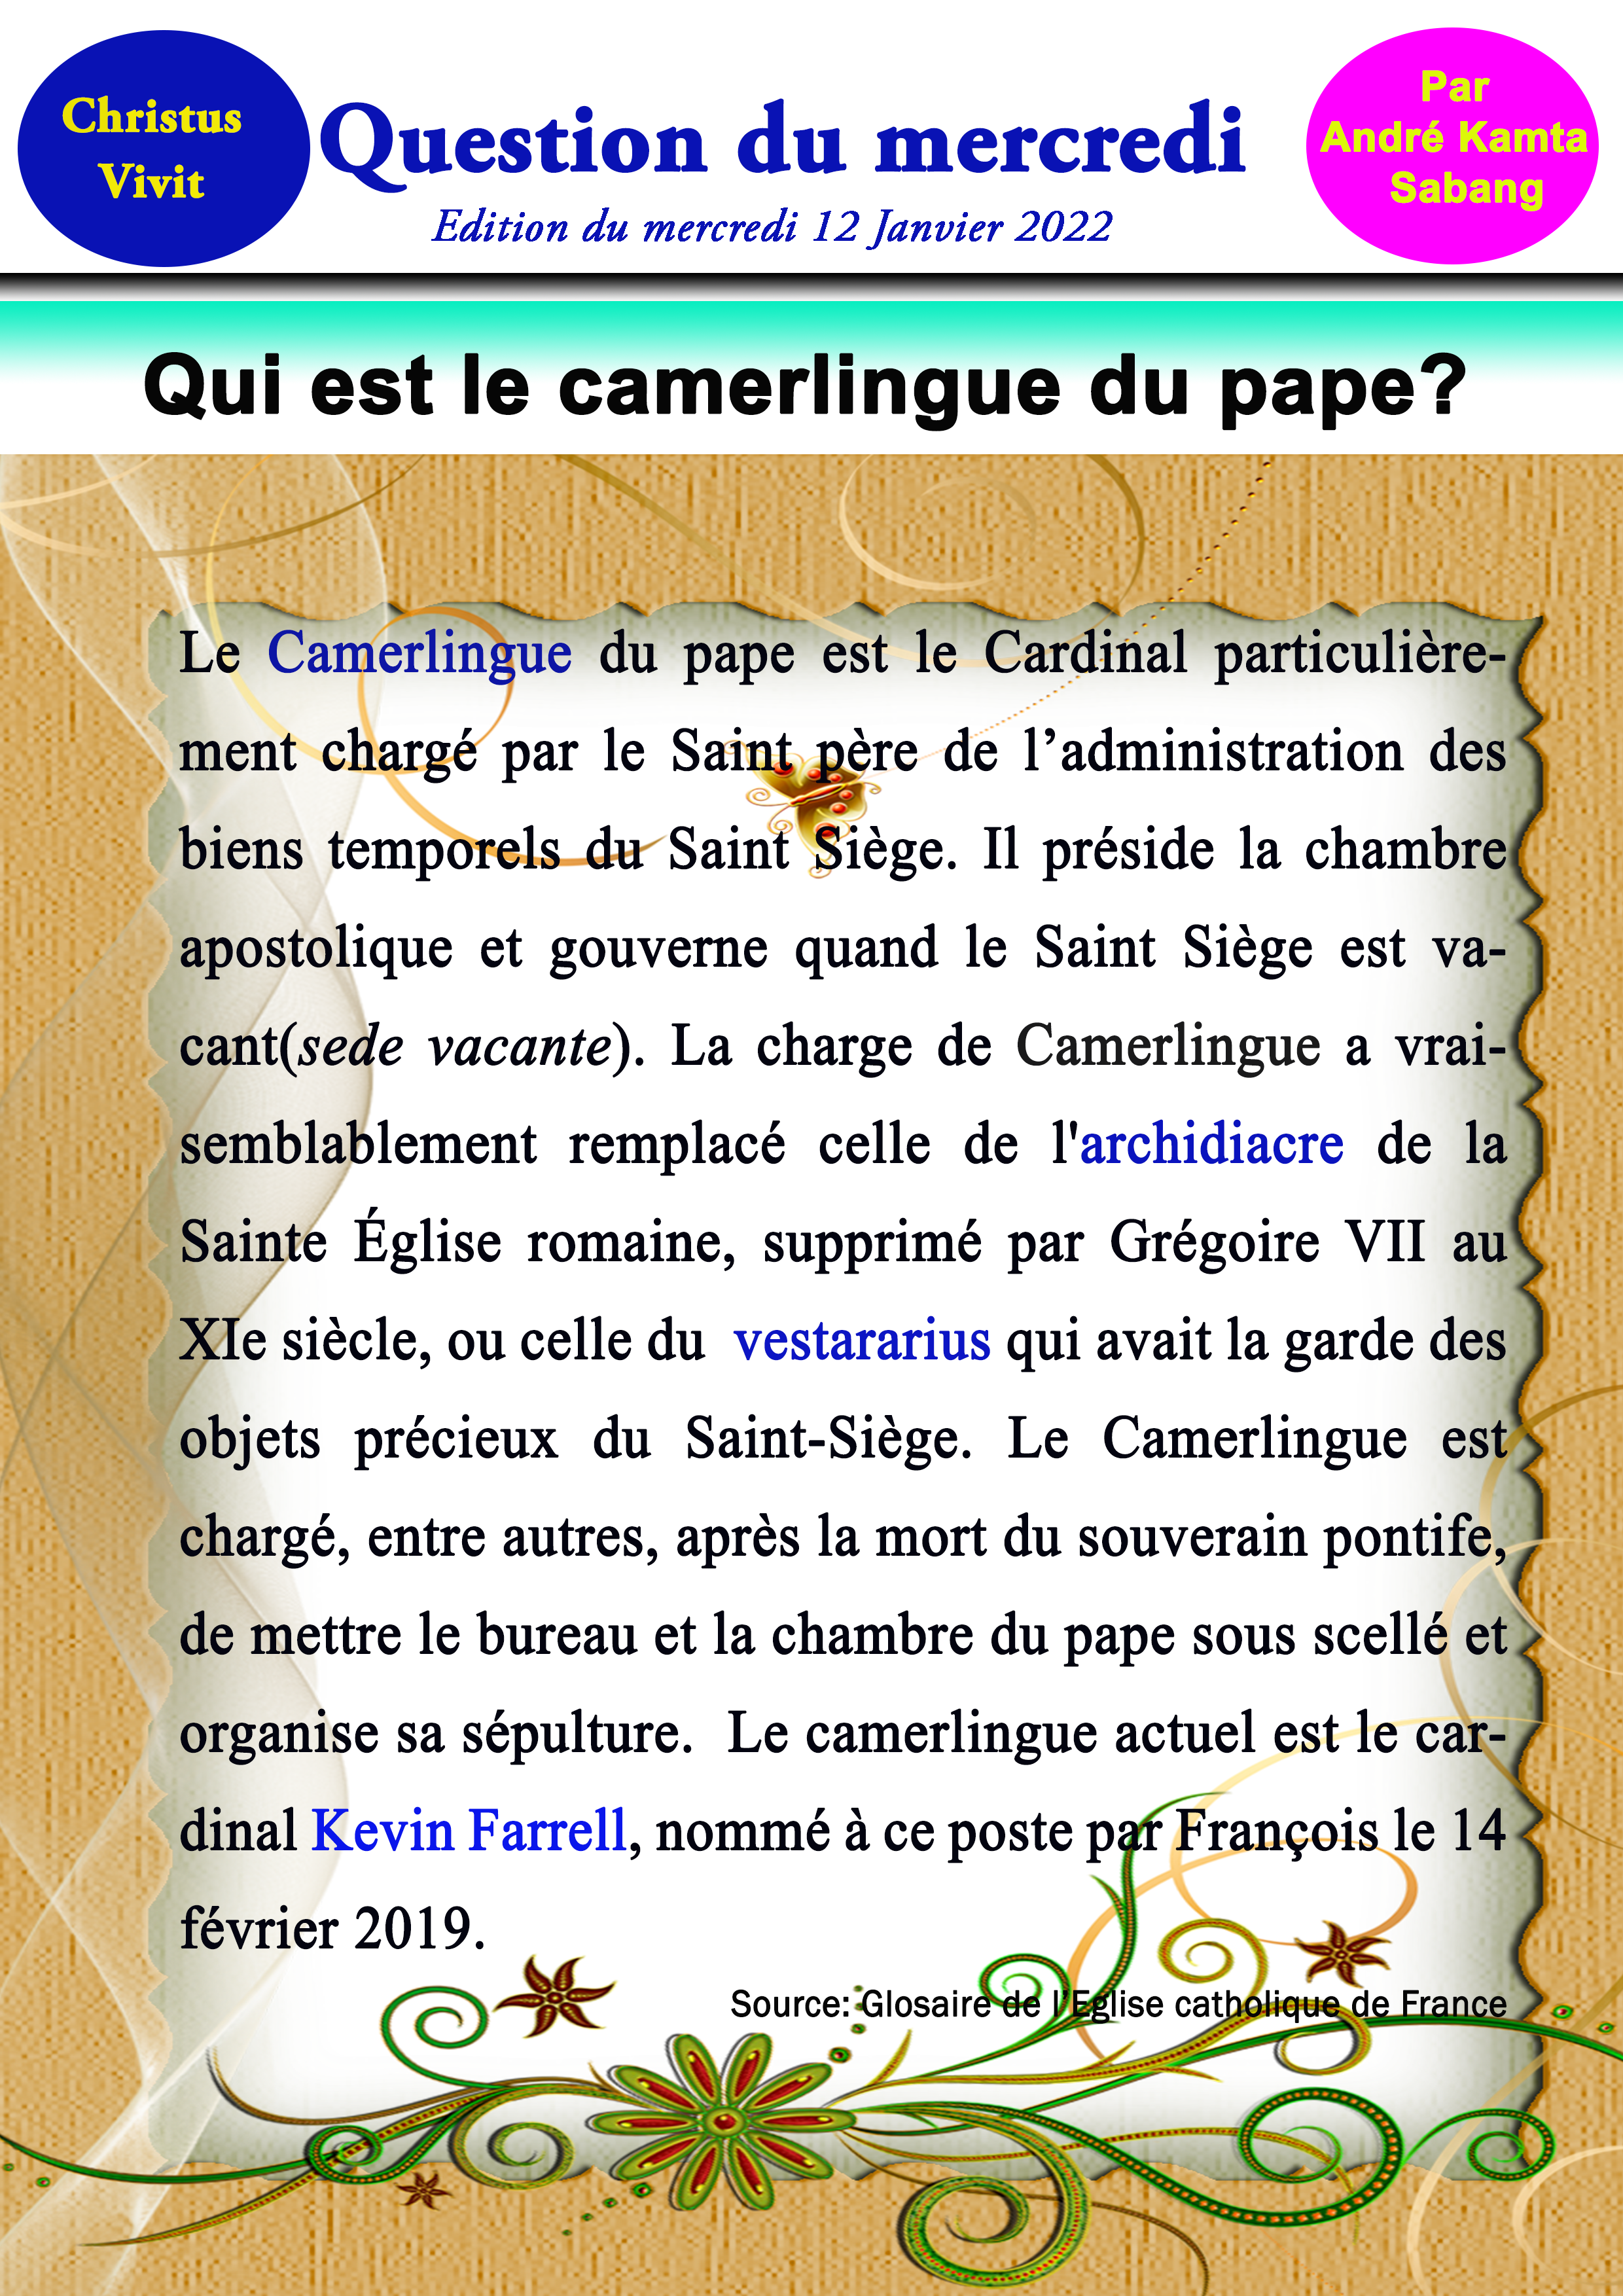 Qui est le Camerlingue du Pape?